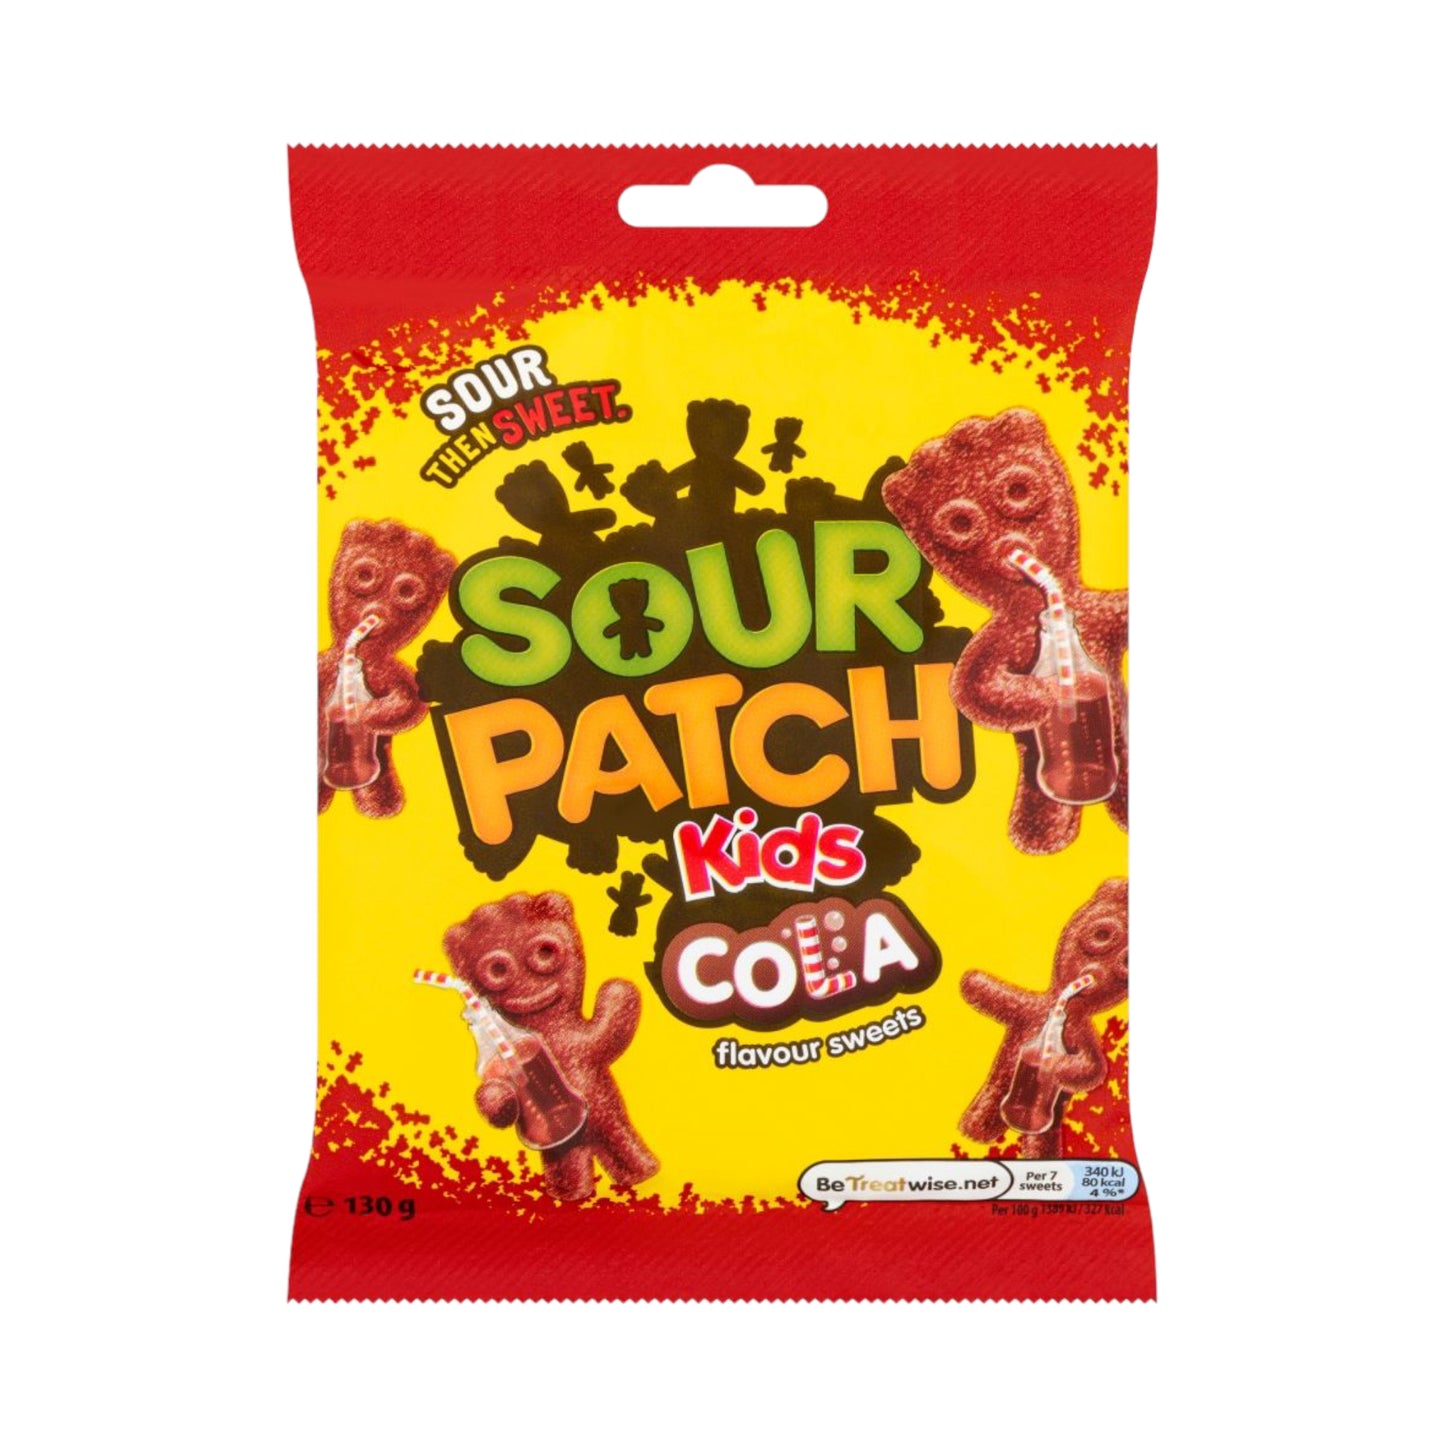 Sour Patch Kids Cola Flavour Sweets Bag 130g